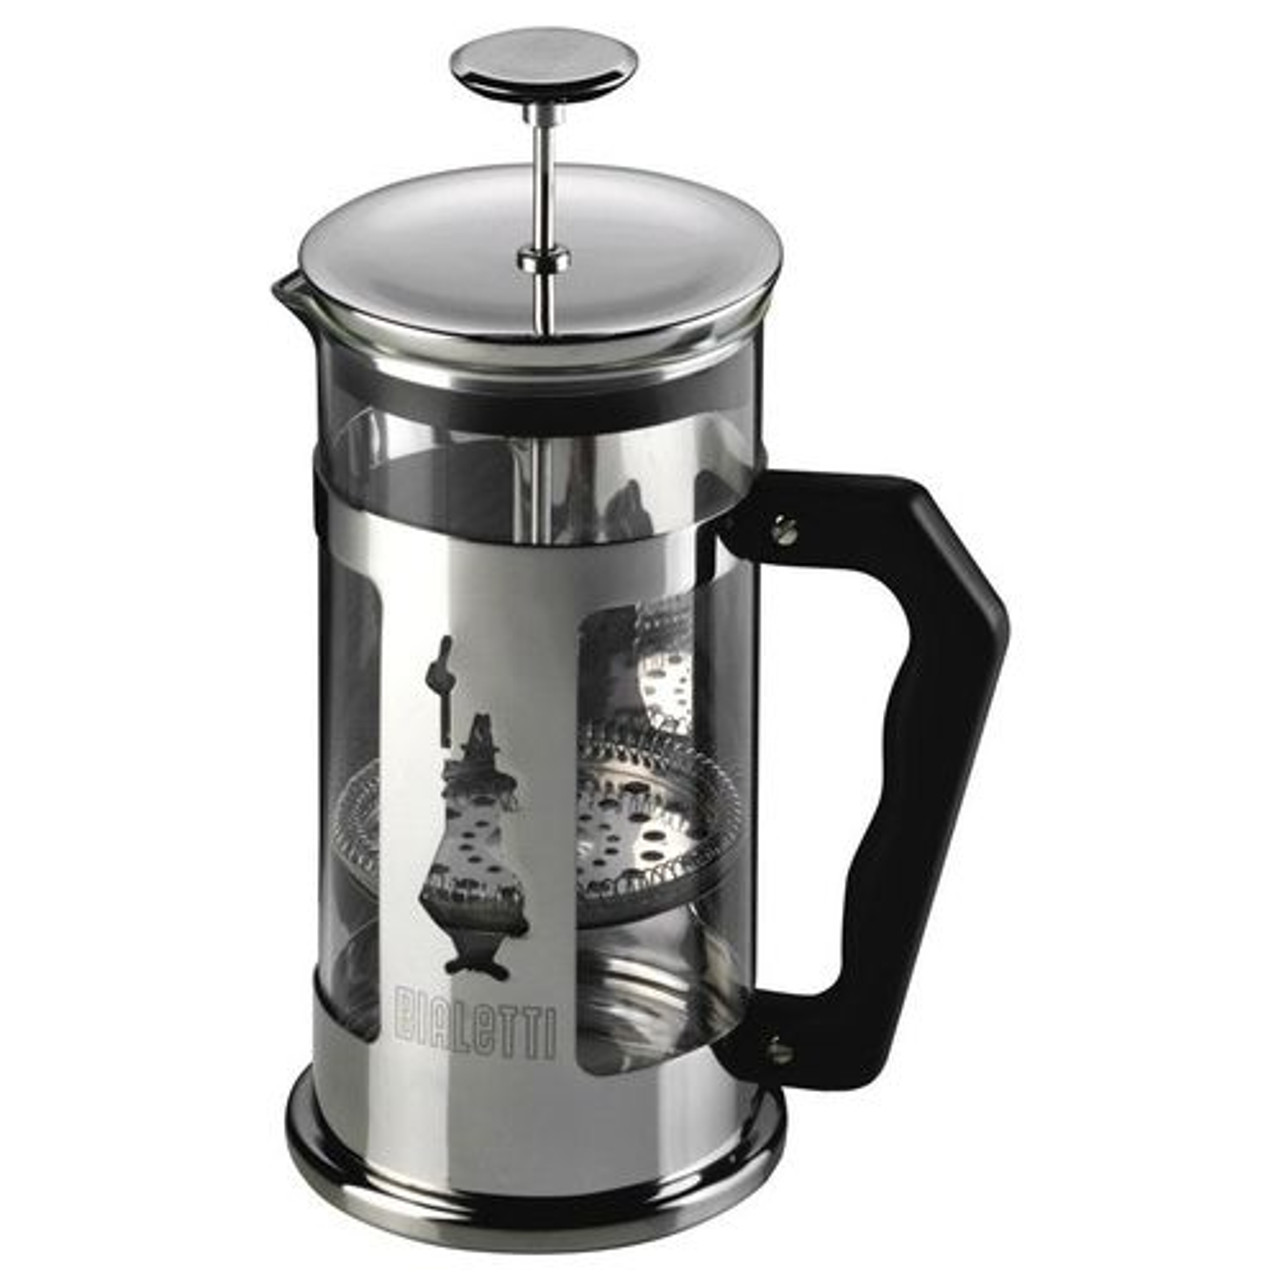 Bialetti 0003160 machine à café manuelle Set cafetière à pressoir 0,35 L  Noir, 0003160/NW 